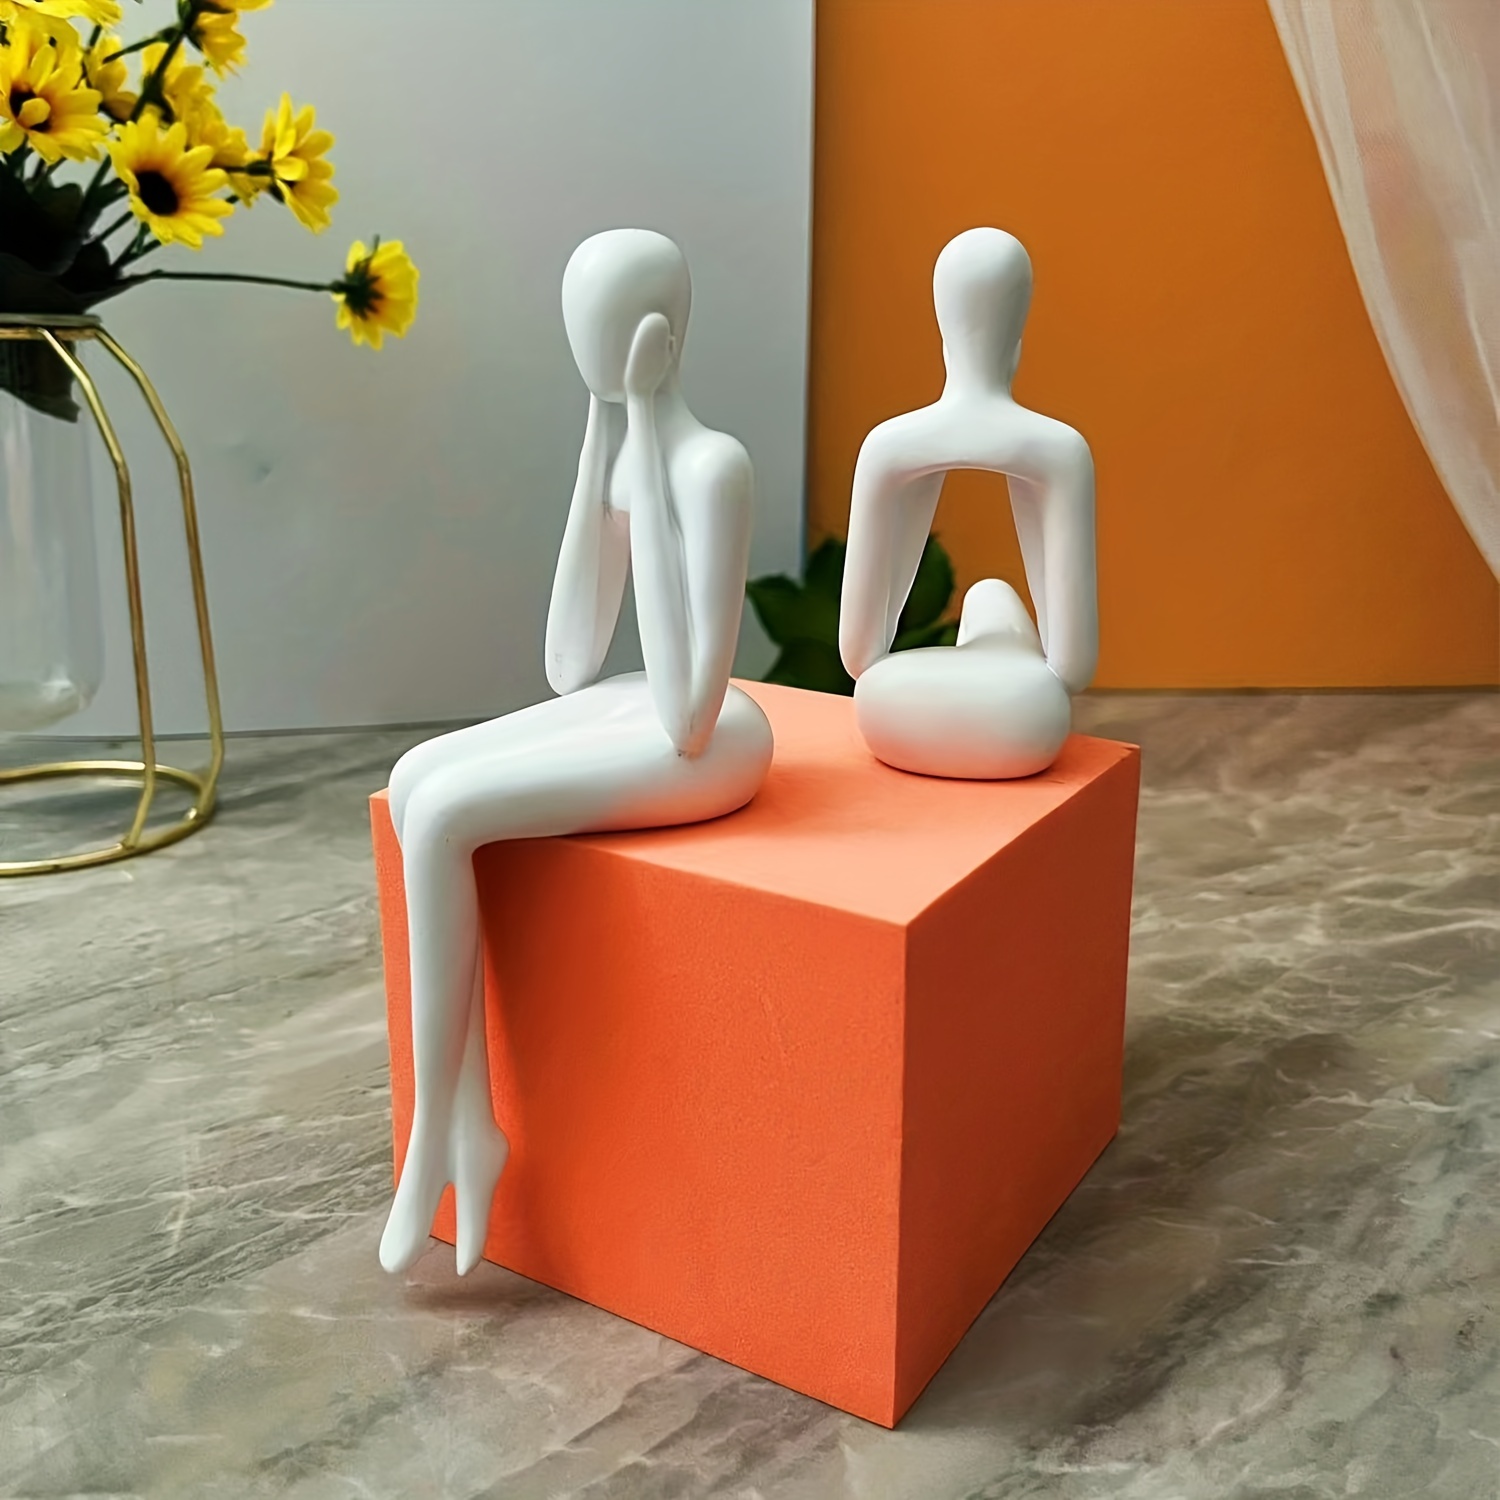 4個、ホワイト装飾座る思想家像抽象彫刻、本棚装飾アクセント樹脂